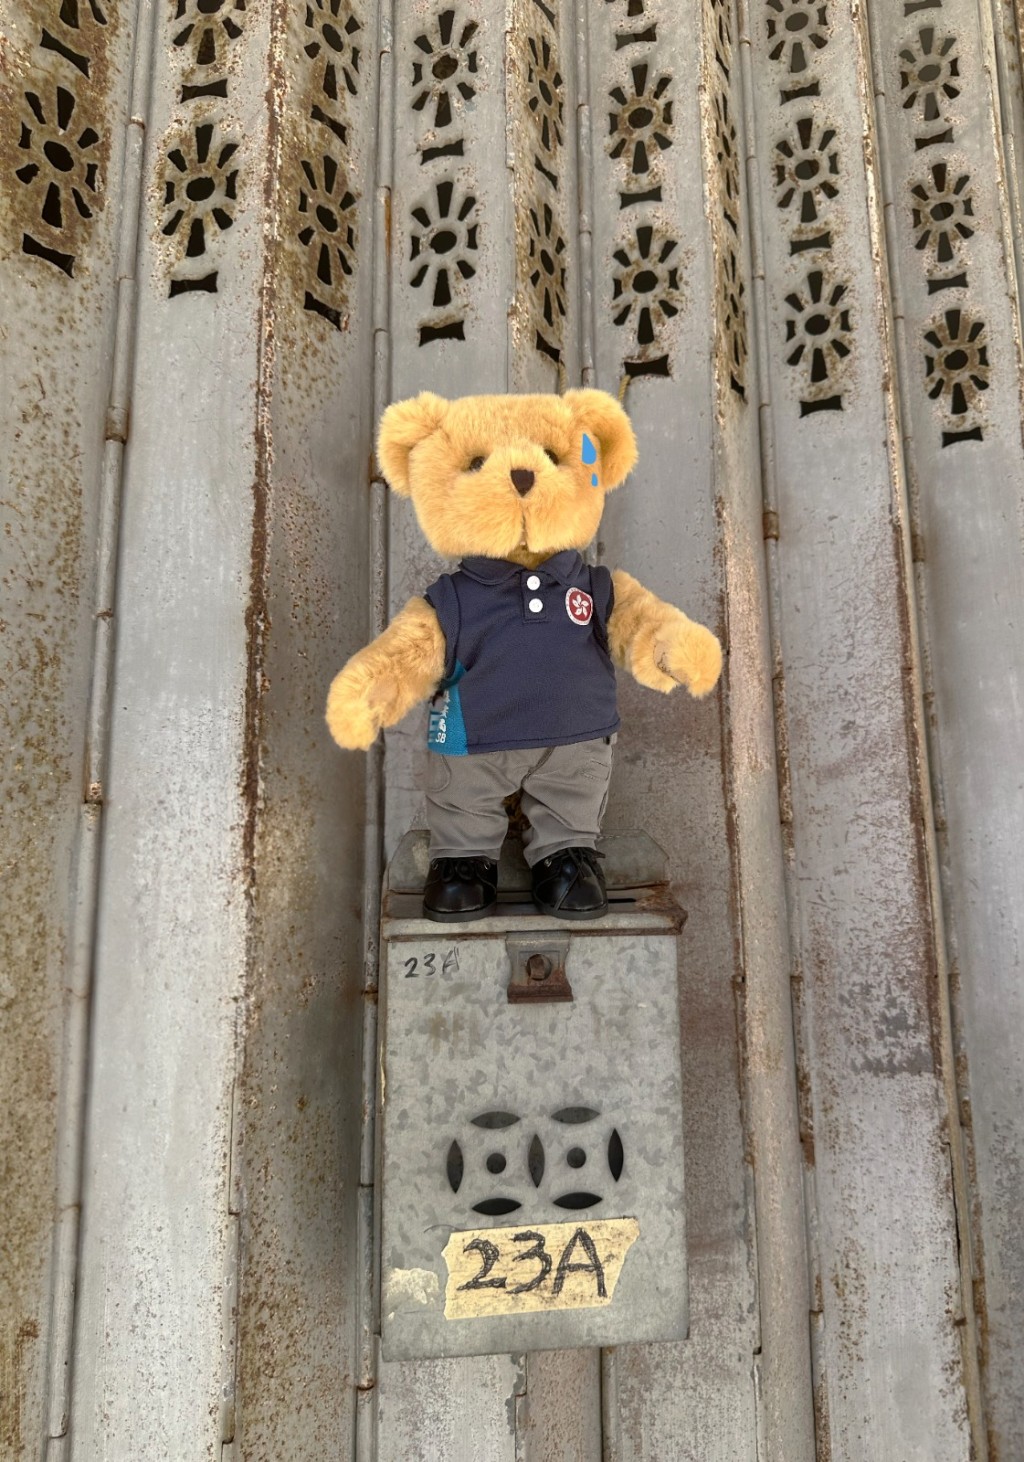 保安局的吉祥物百厭星SB熊「隨團」出行到沙頭角天后廟及新樓街等地「打卡」留念。保安局fb